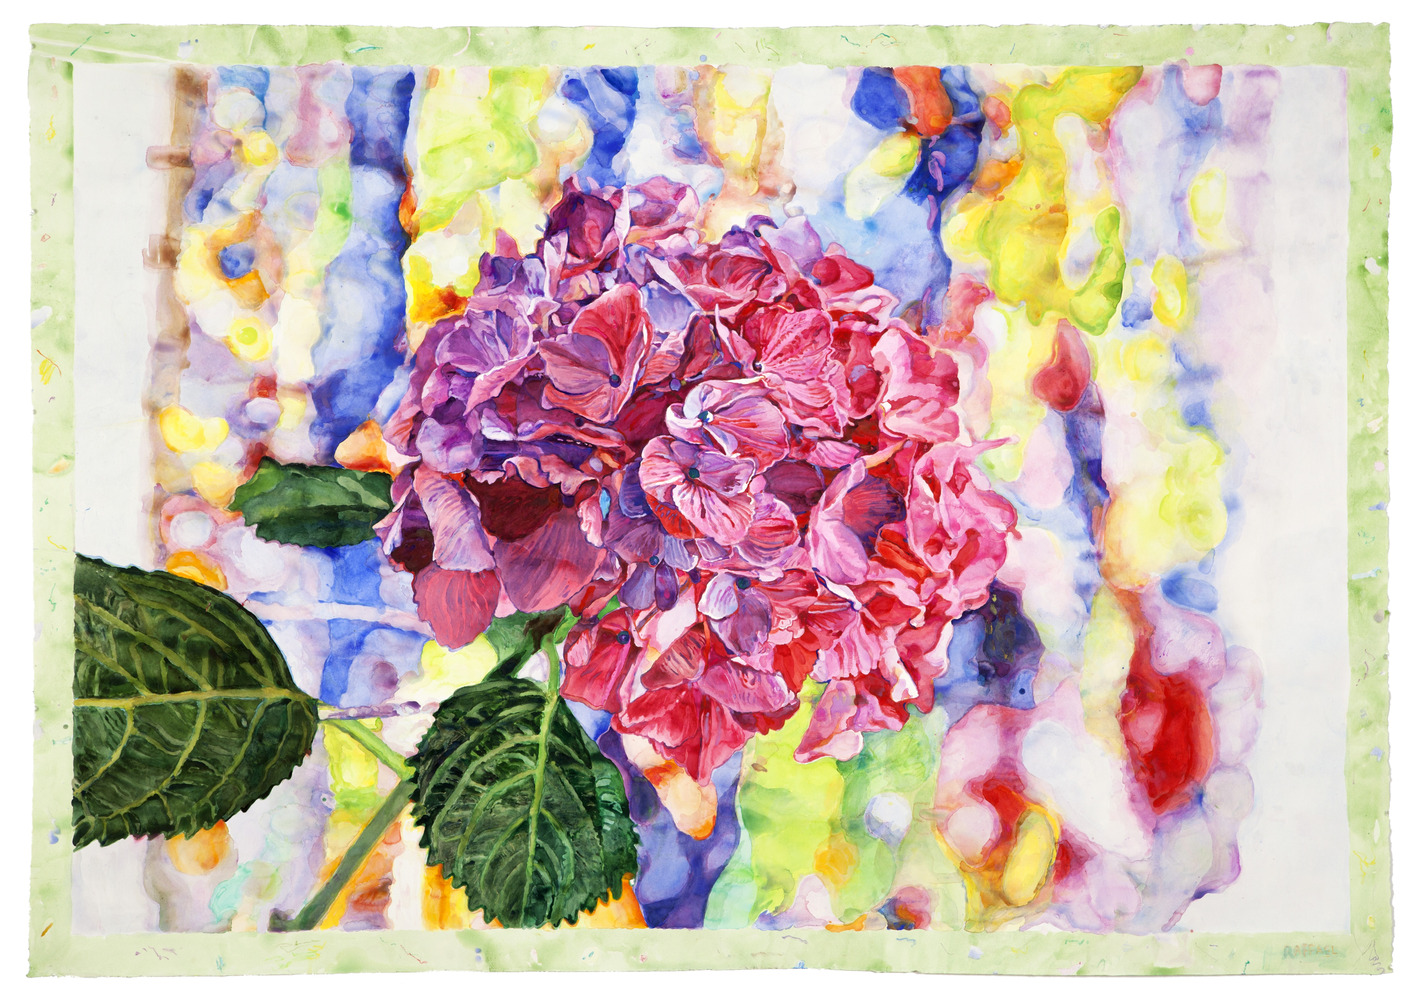 Flower Dream - aquarelle sur papier by Joseph Raffael